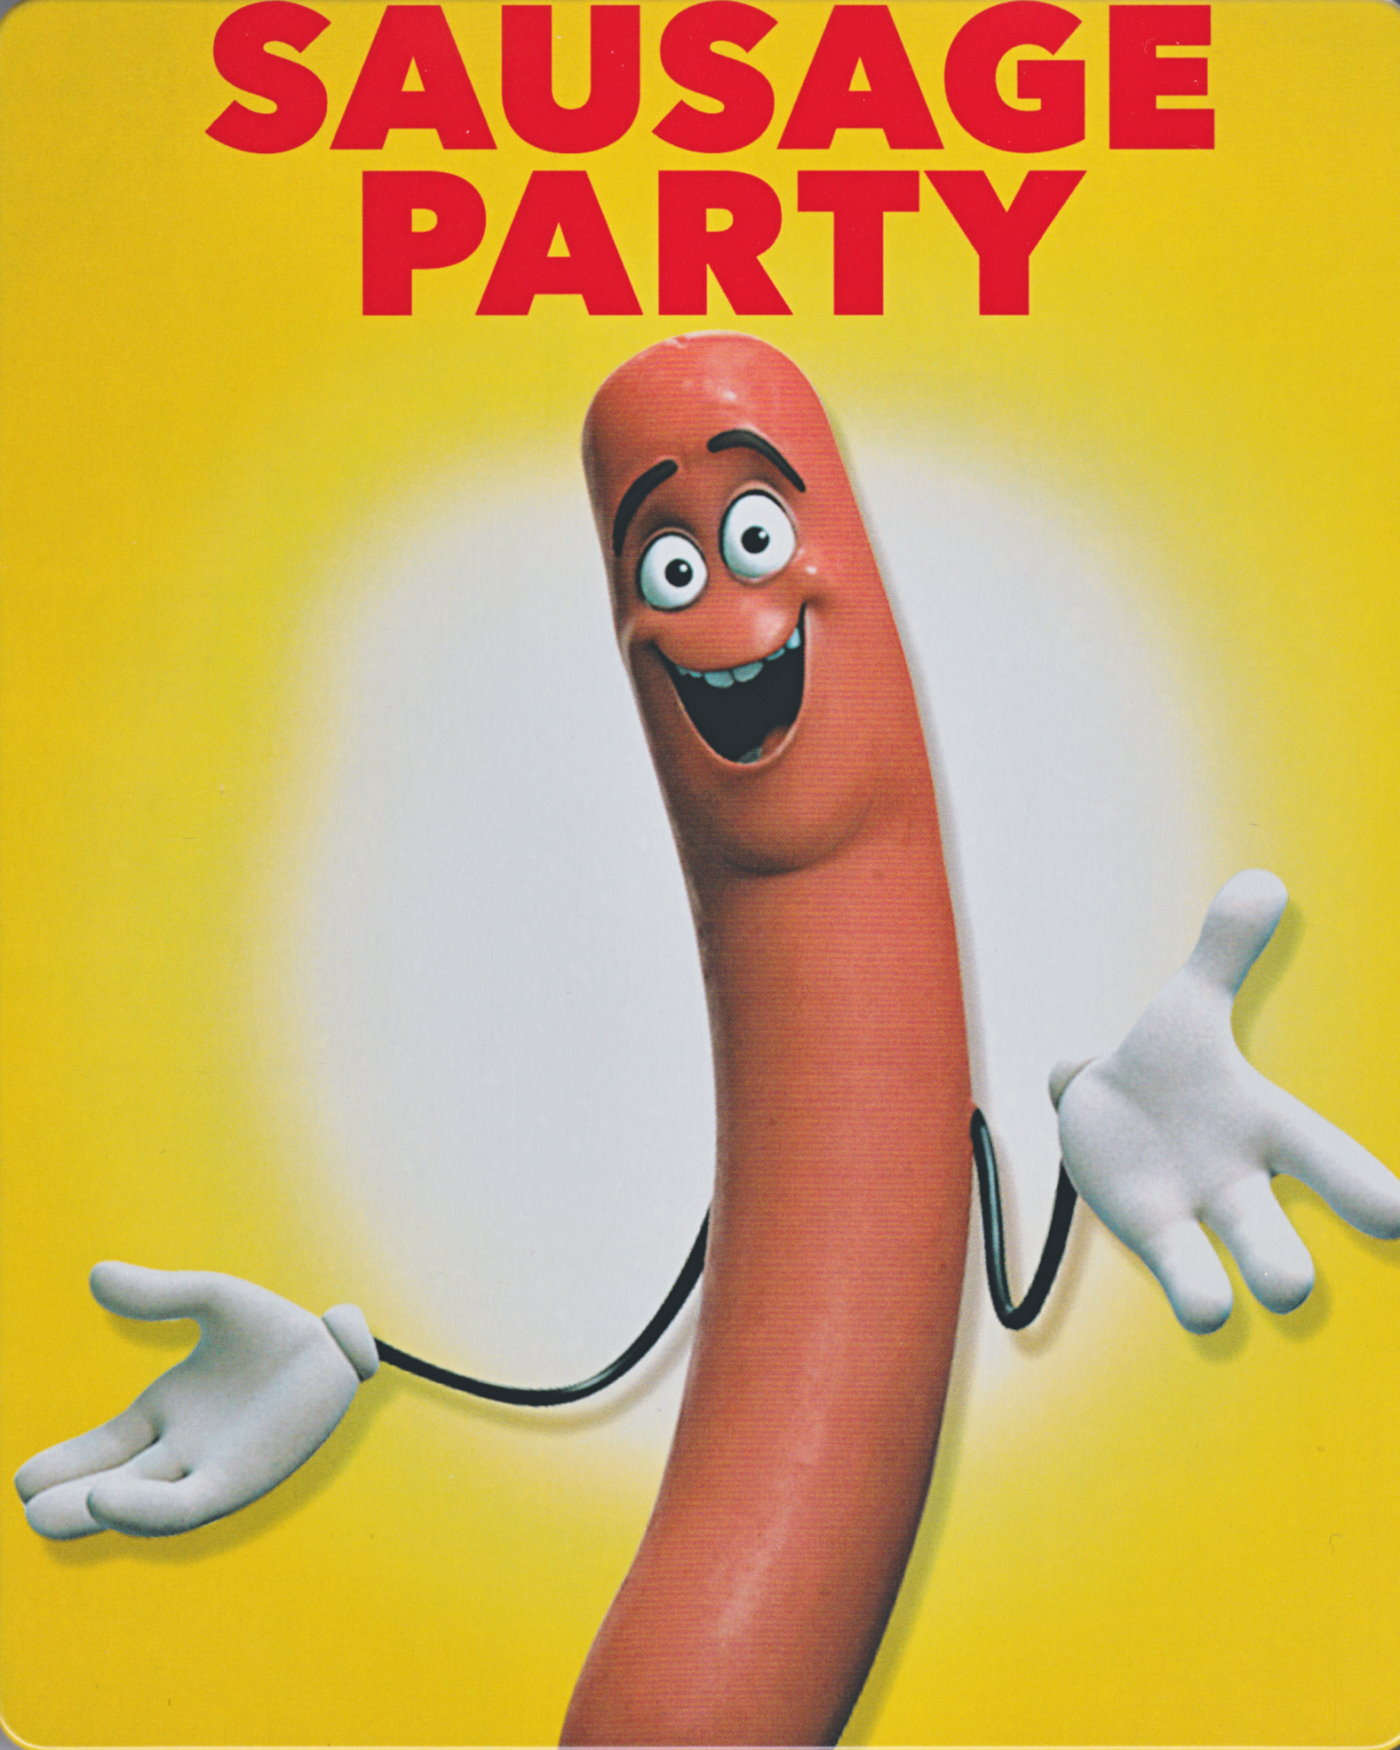 Cover - Sausage Party - Es geht um die Wurst.jpg